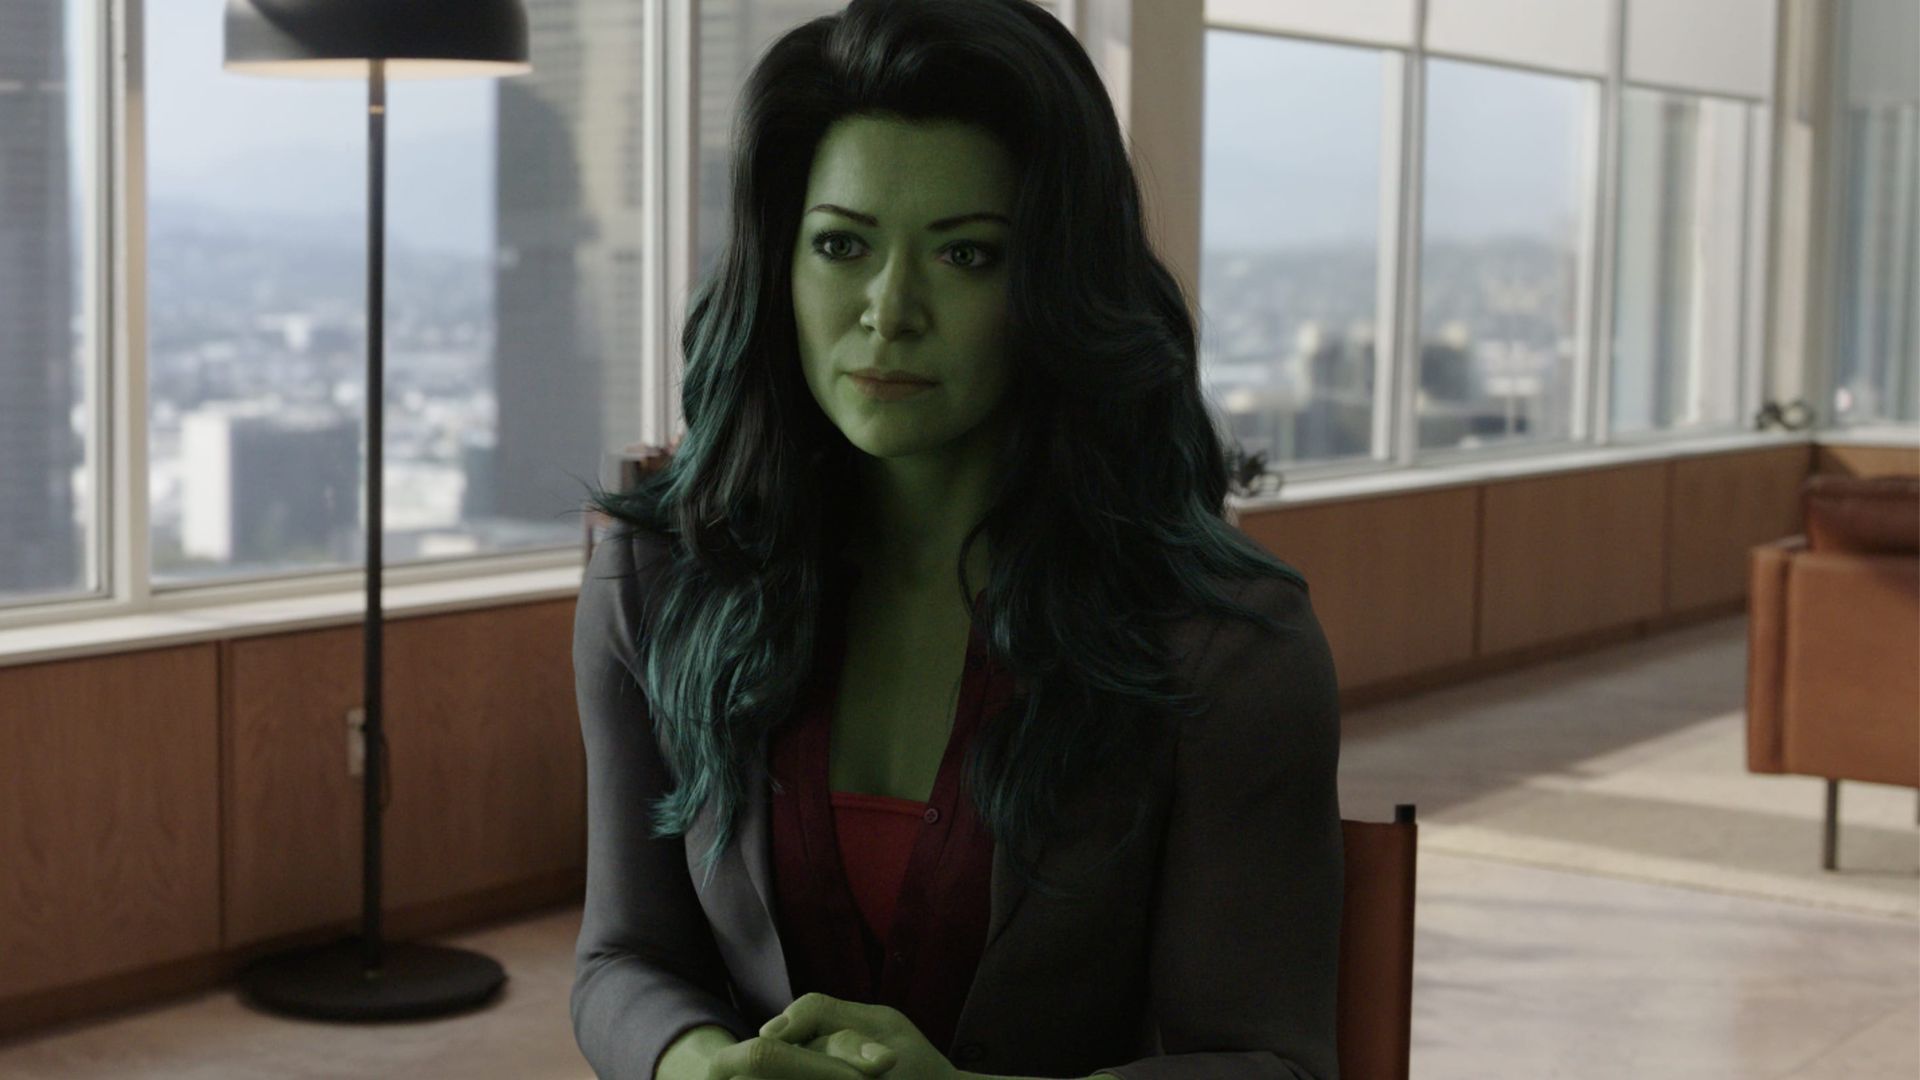 Mulher-Hulk vai ter temporada 2? - Canaltech